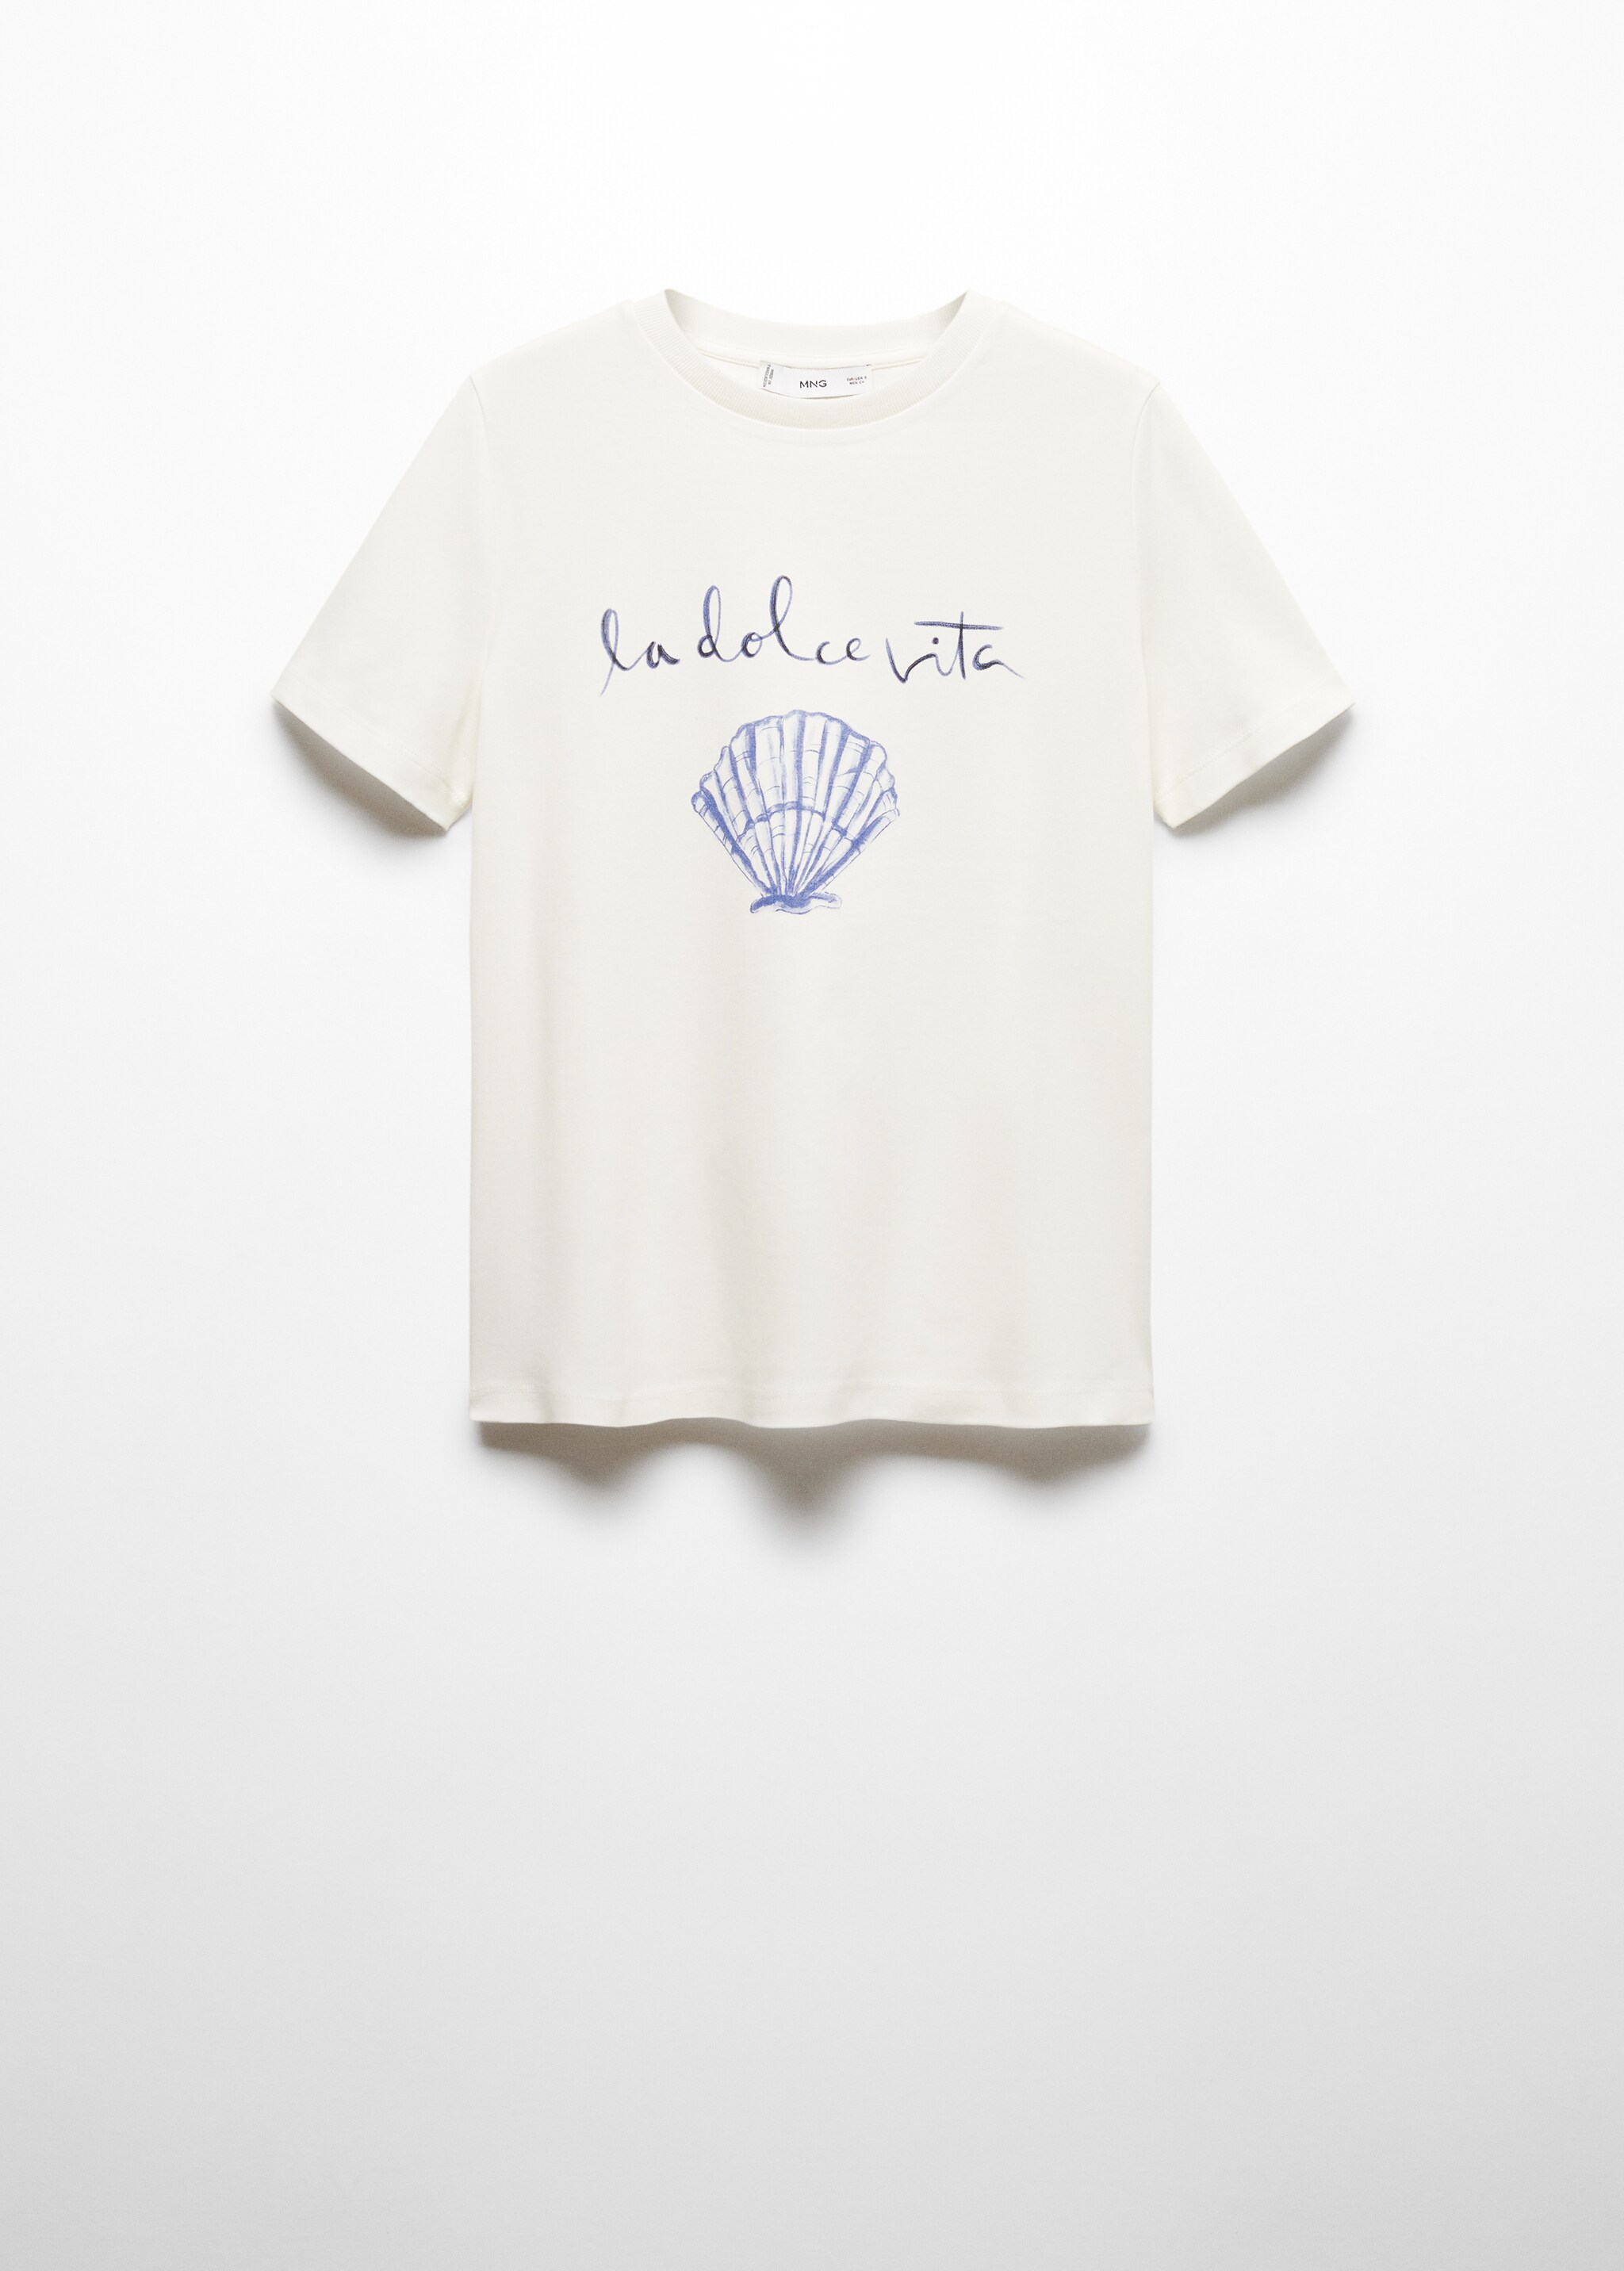 Camiseta 100% algodón mensaje estampado - Artículo sin modelo